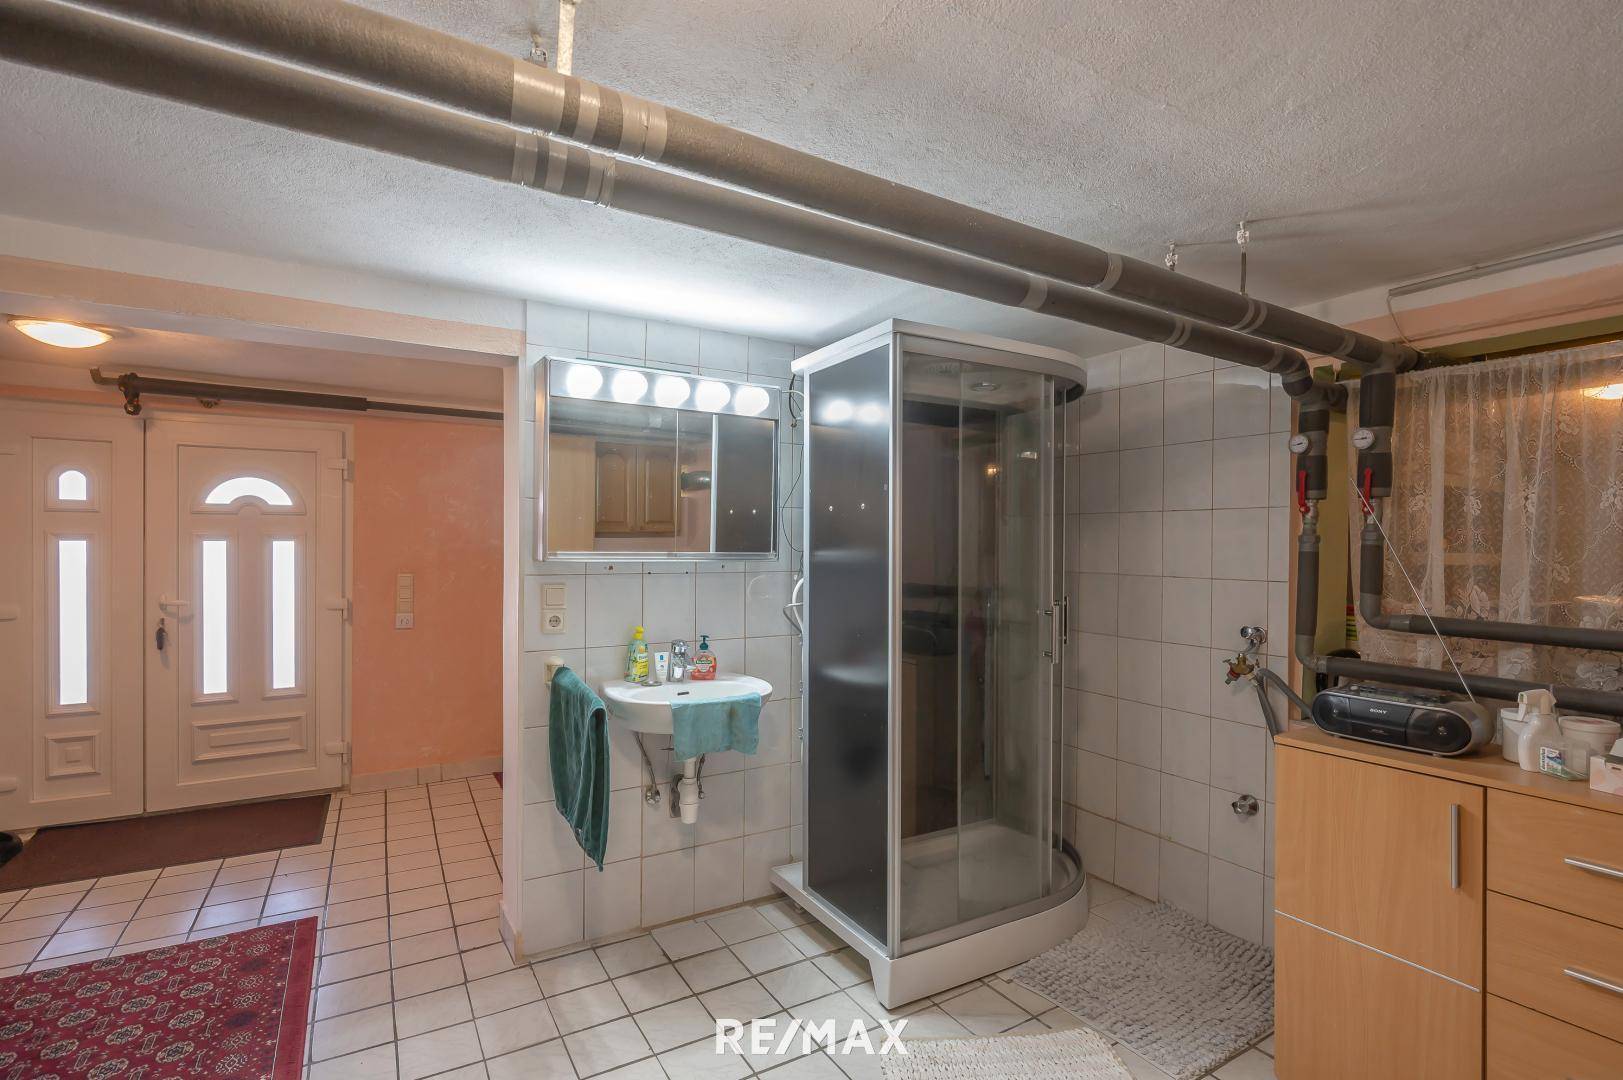 Kellergeschoss mit Dusche und Toilette